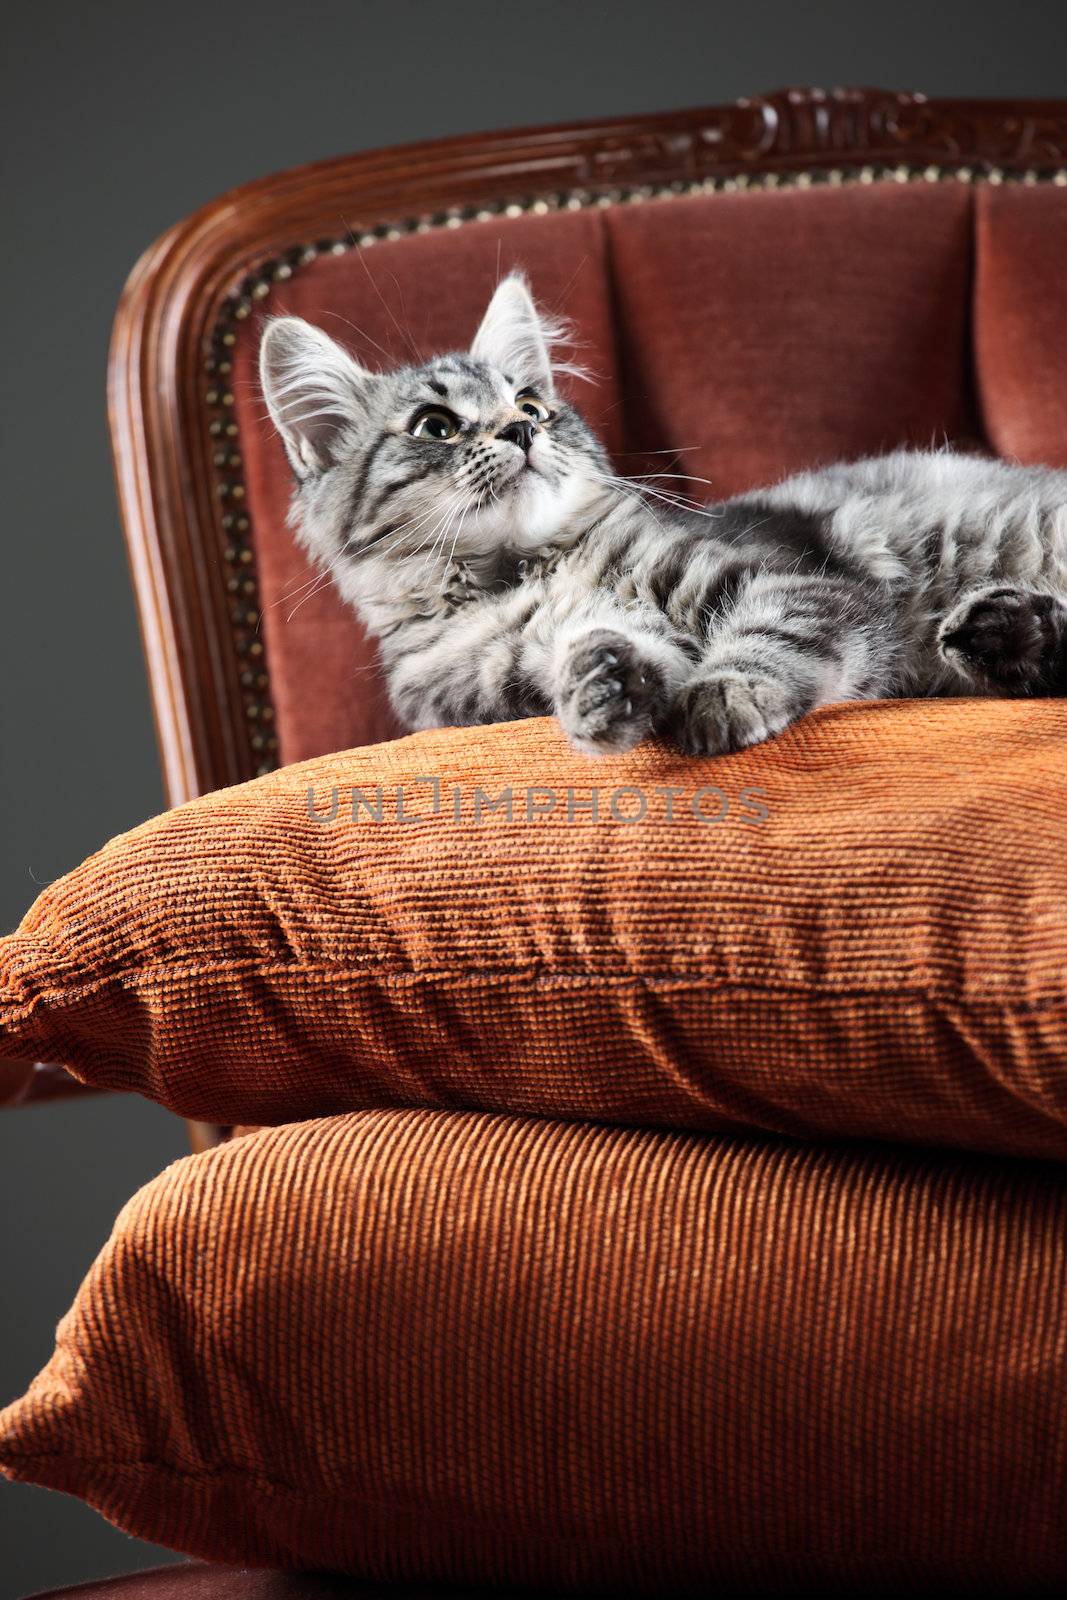 Kitten relaxing on a baroque armchair